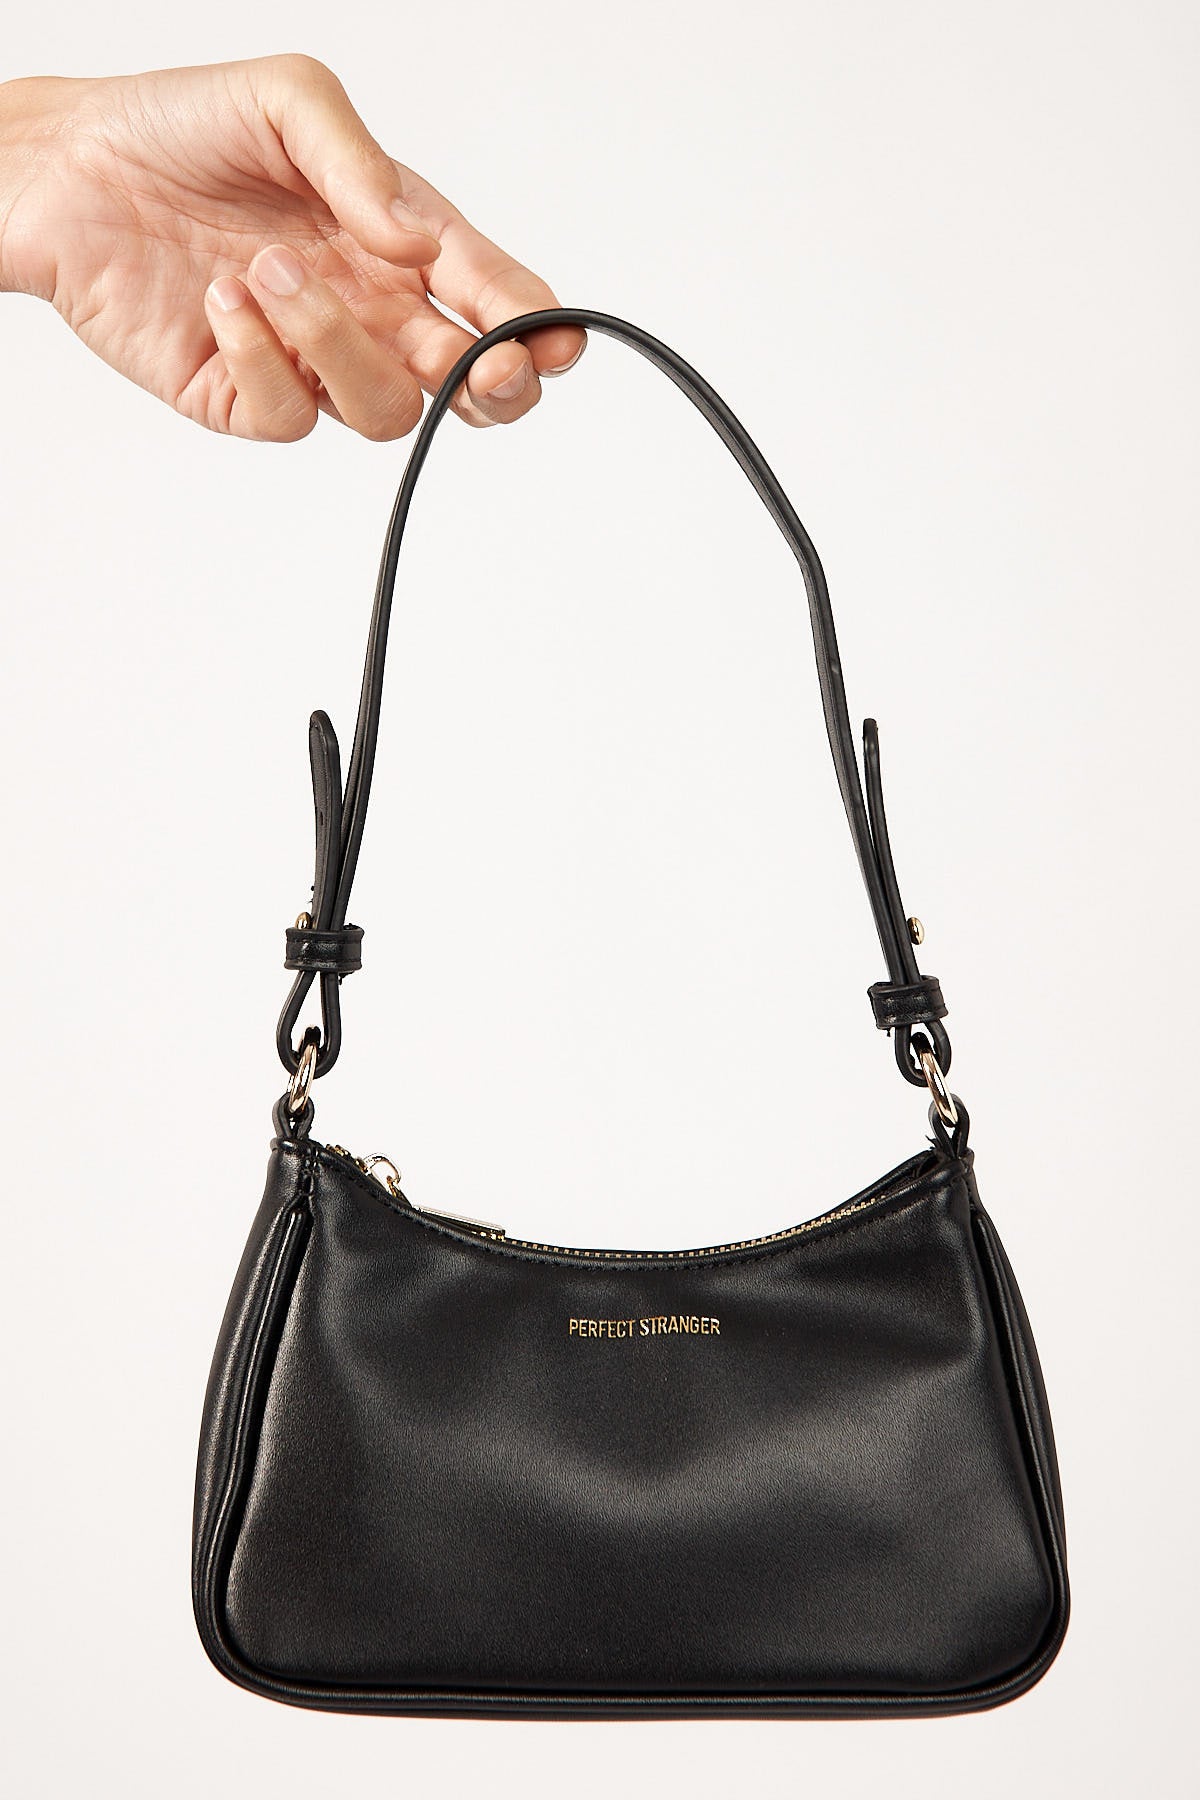 Perfect Stranger Mini Pochette Handbag Black